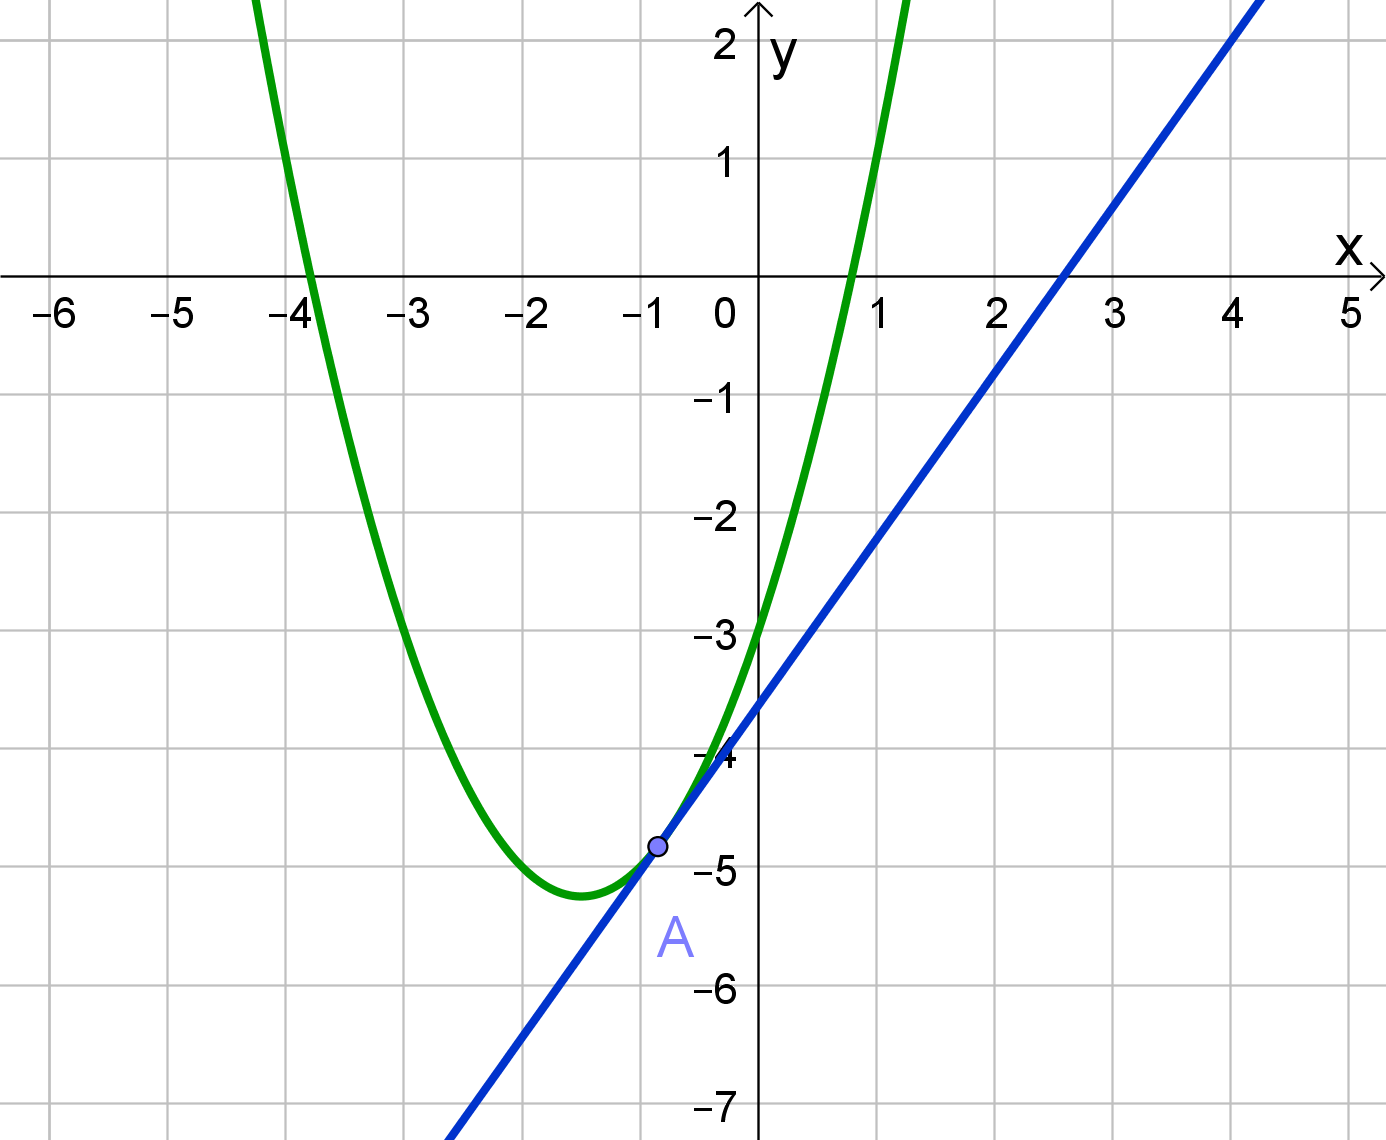 parabola i pravac imaju jednu zajedničku točku; pravac je tangenta parabole